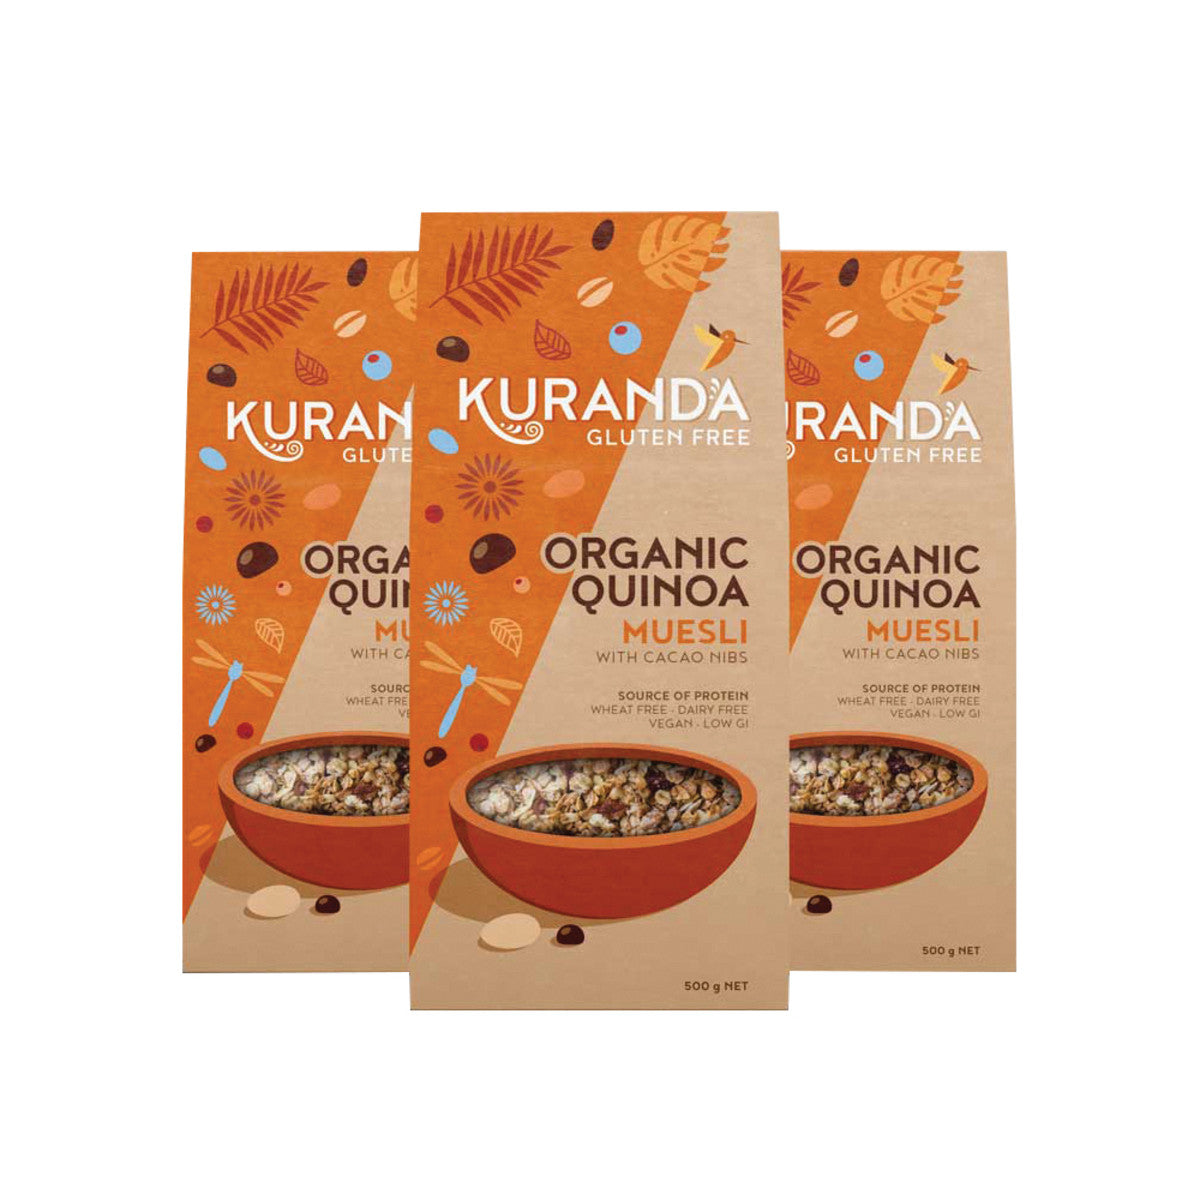 Kuranda - Gluten Free Muesli Organic Quinoa